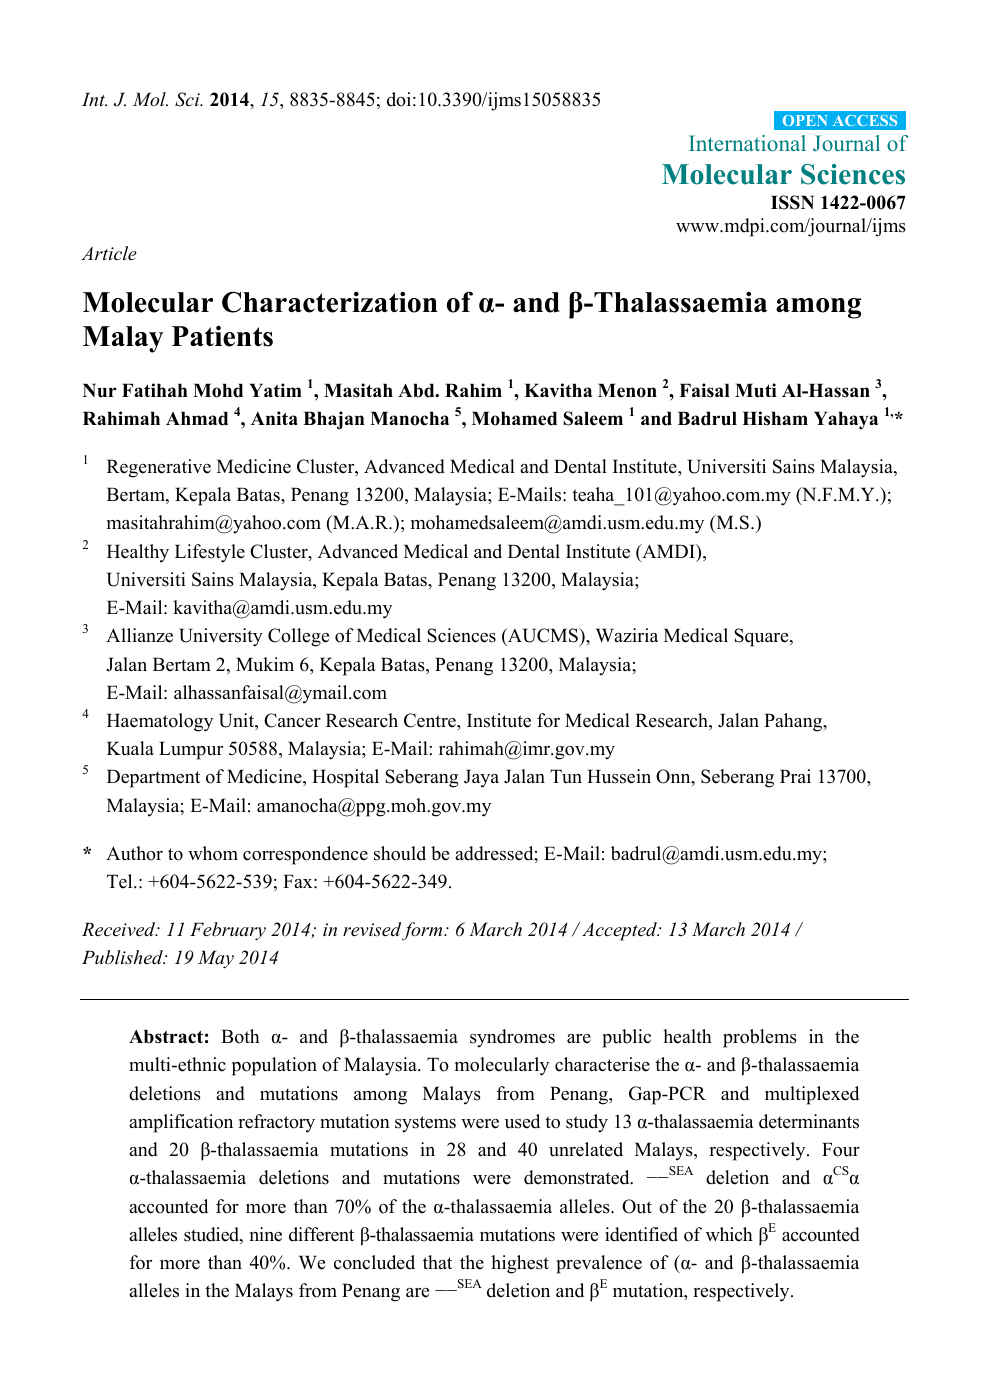 Thalassemia in malay